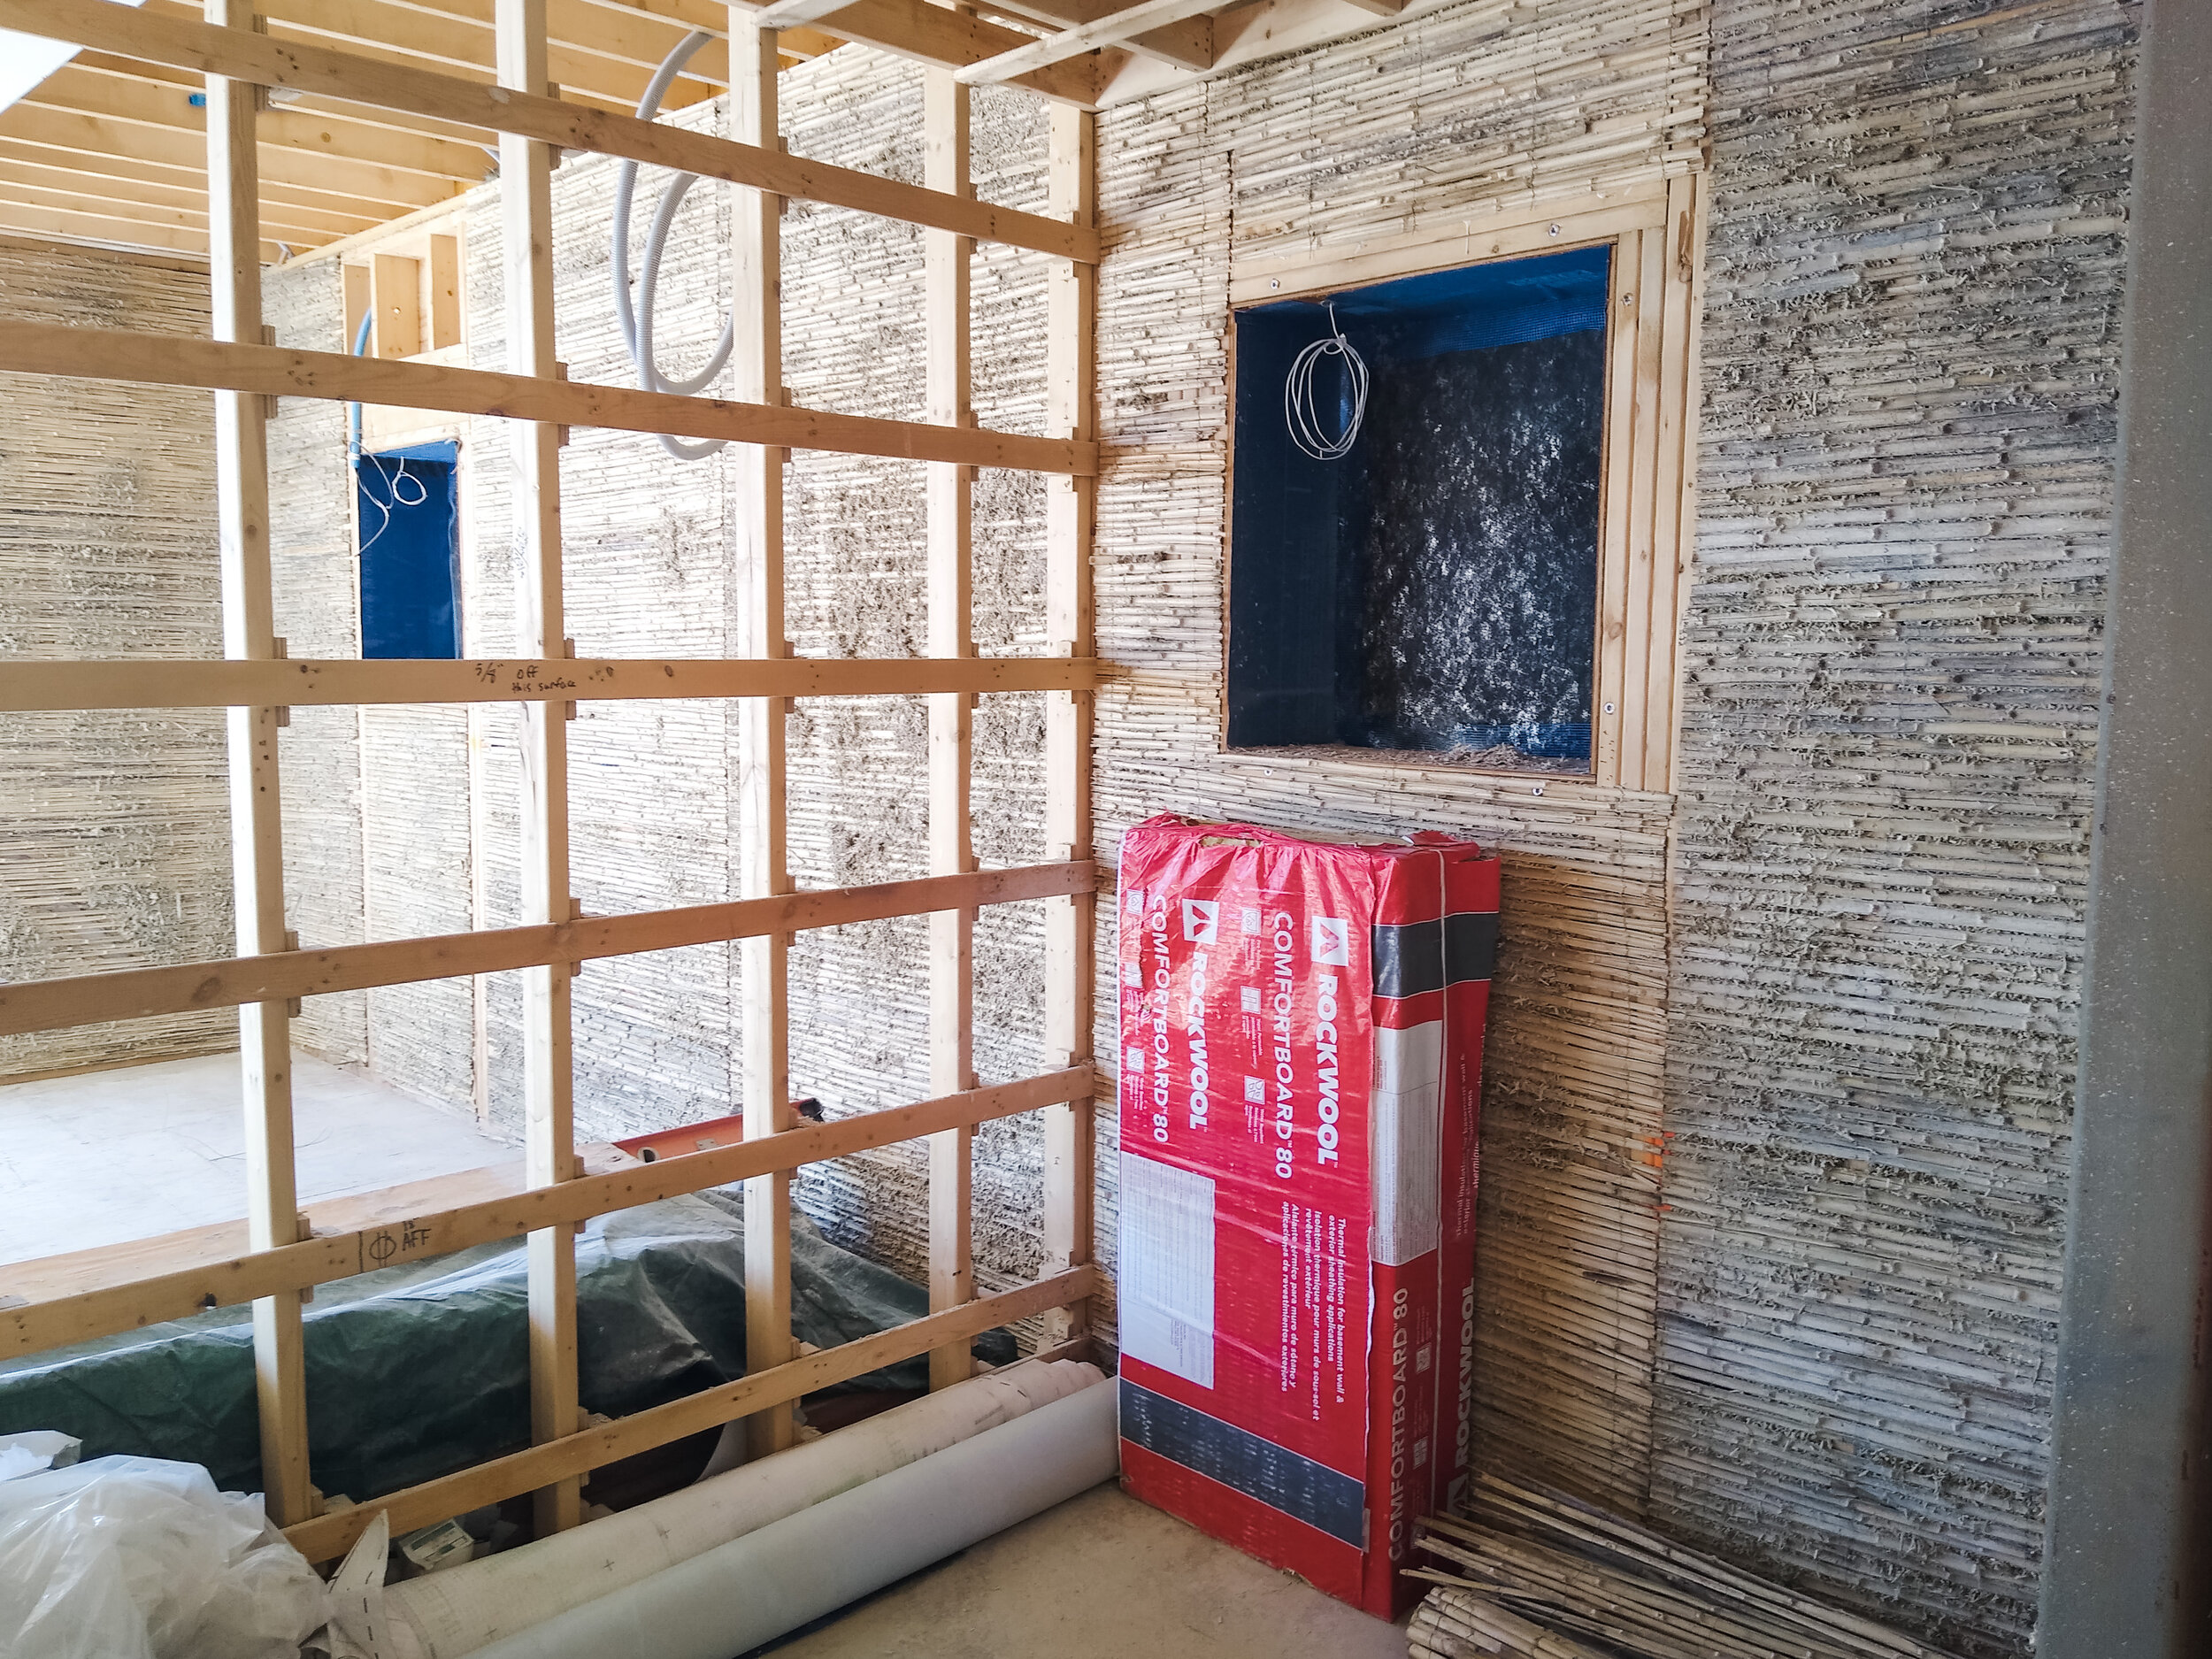 外部围护结构的内部包括竹制车床，在空腔内有麻凝混凝土。